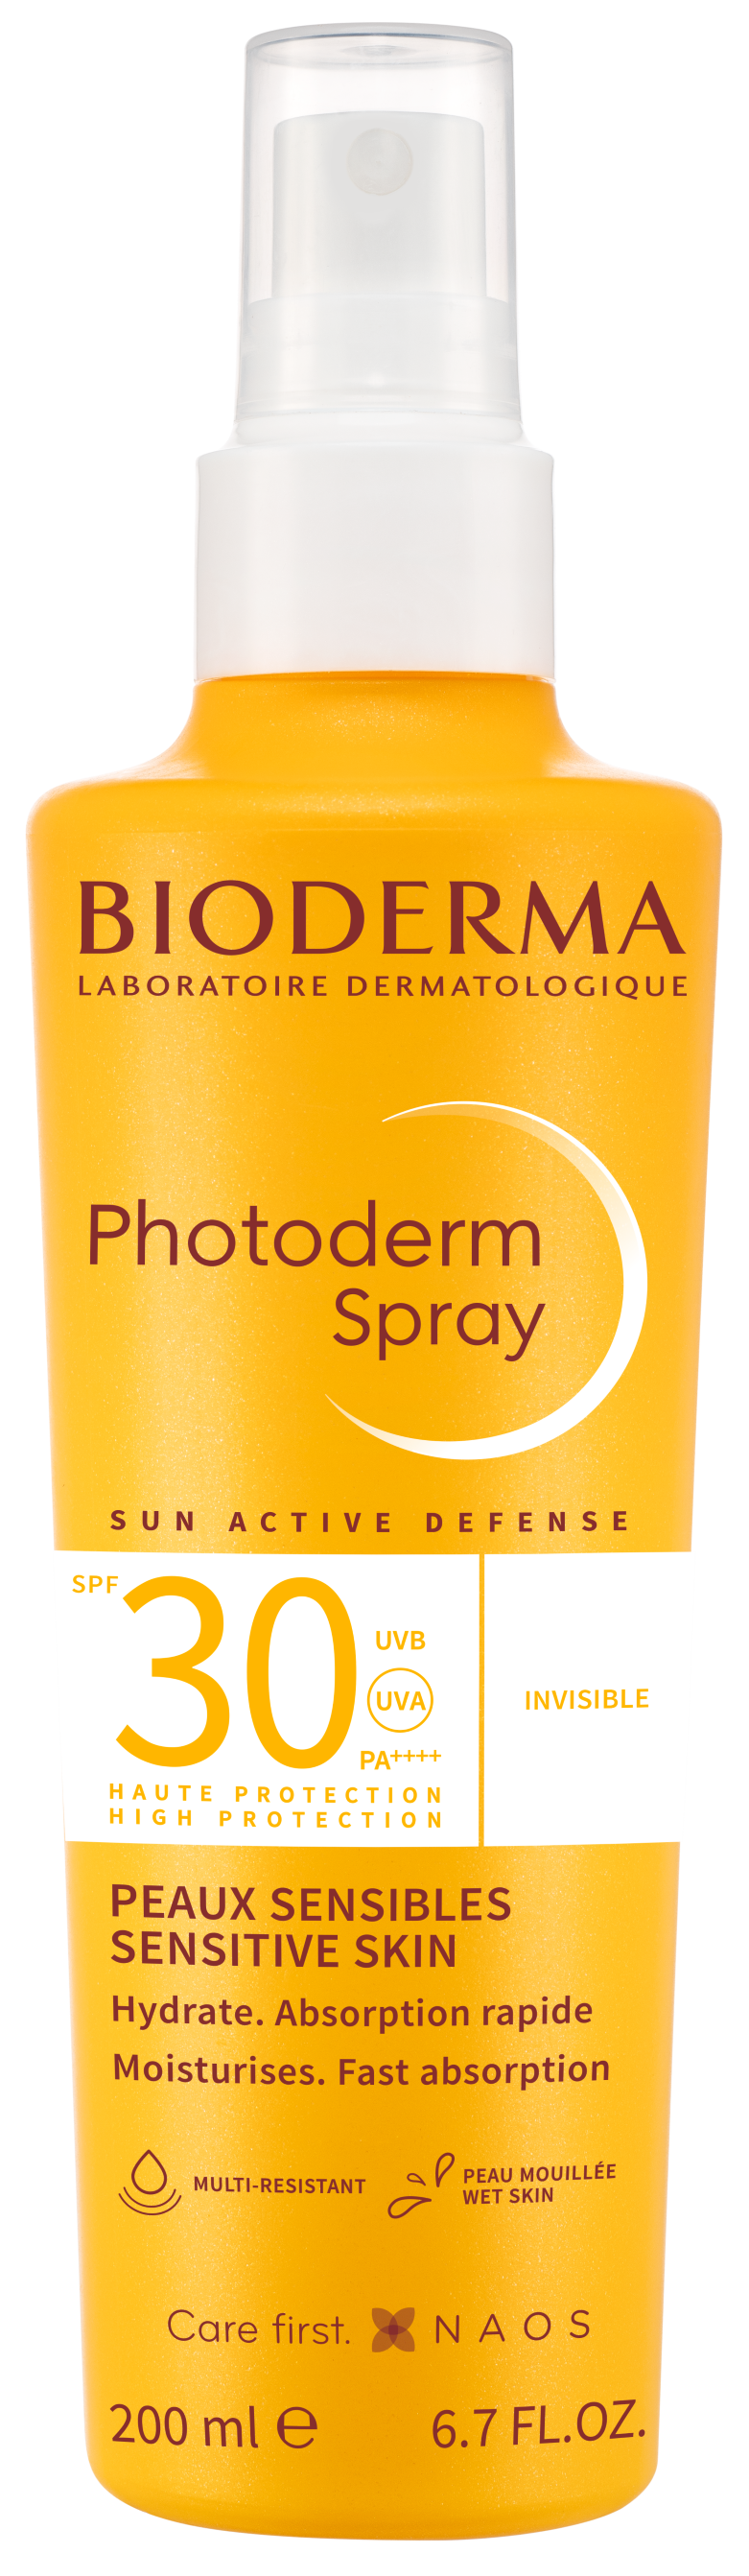 Photoderm Spray SPF30 - Bioderma